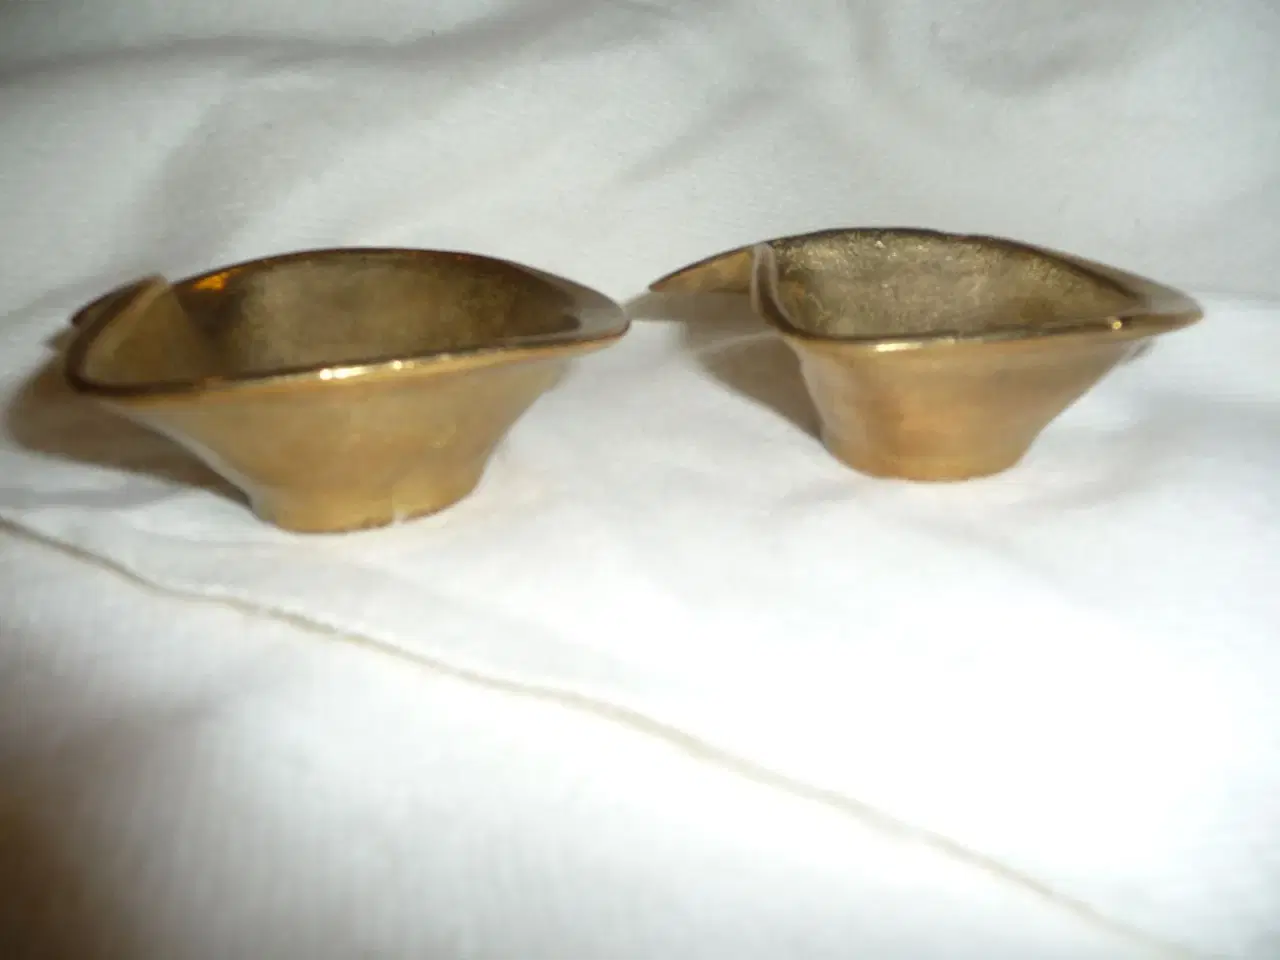 Billede 2 - 2 gamle messing skåle